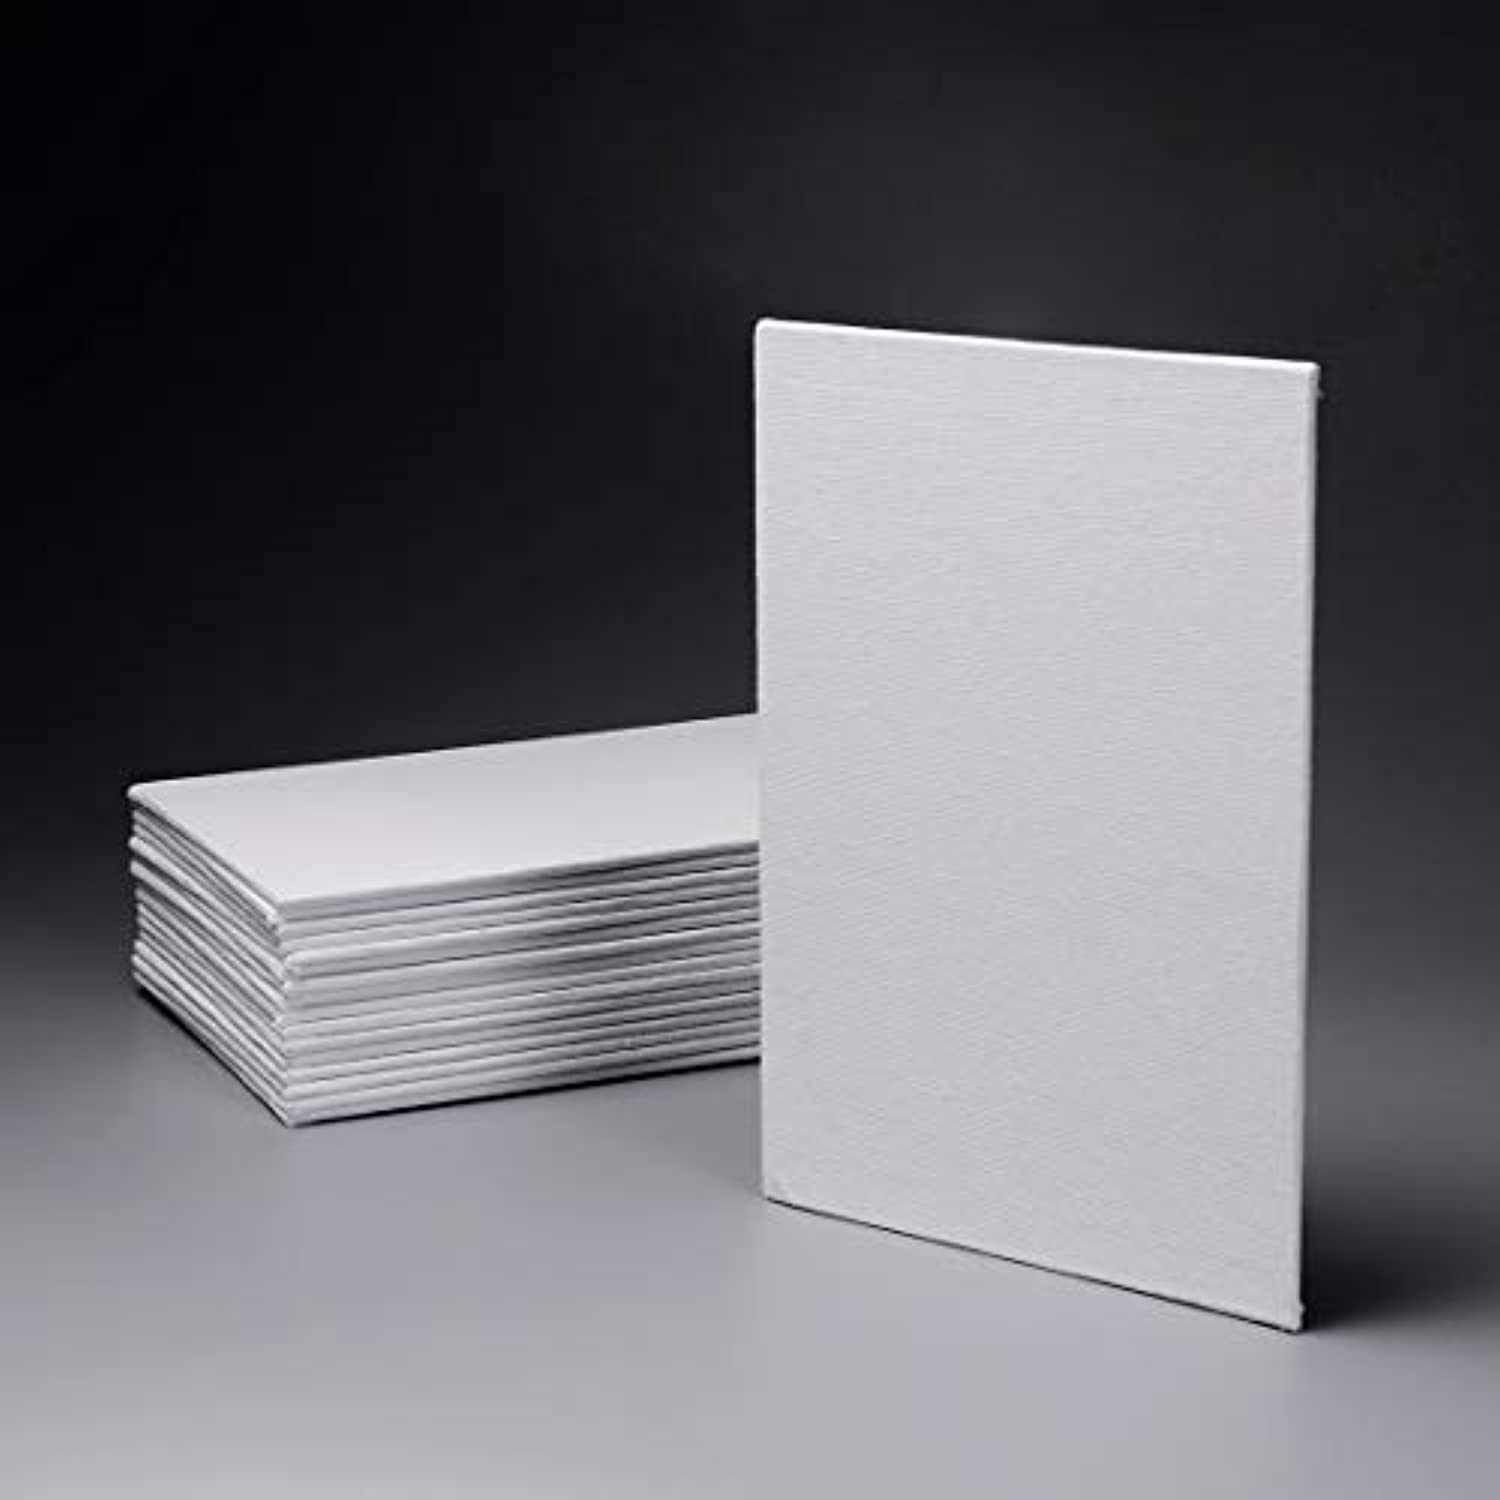  Panel de lienzo blanco de 11.8 x 15.7 pulgadas, 0.6 in de  grosor, 11.8 x 15.7 pulgadas, lienzo blanco en blanco, lienzo de pintura  para material de mezcla de aceite y lino